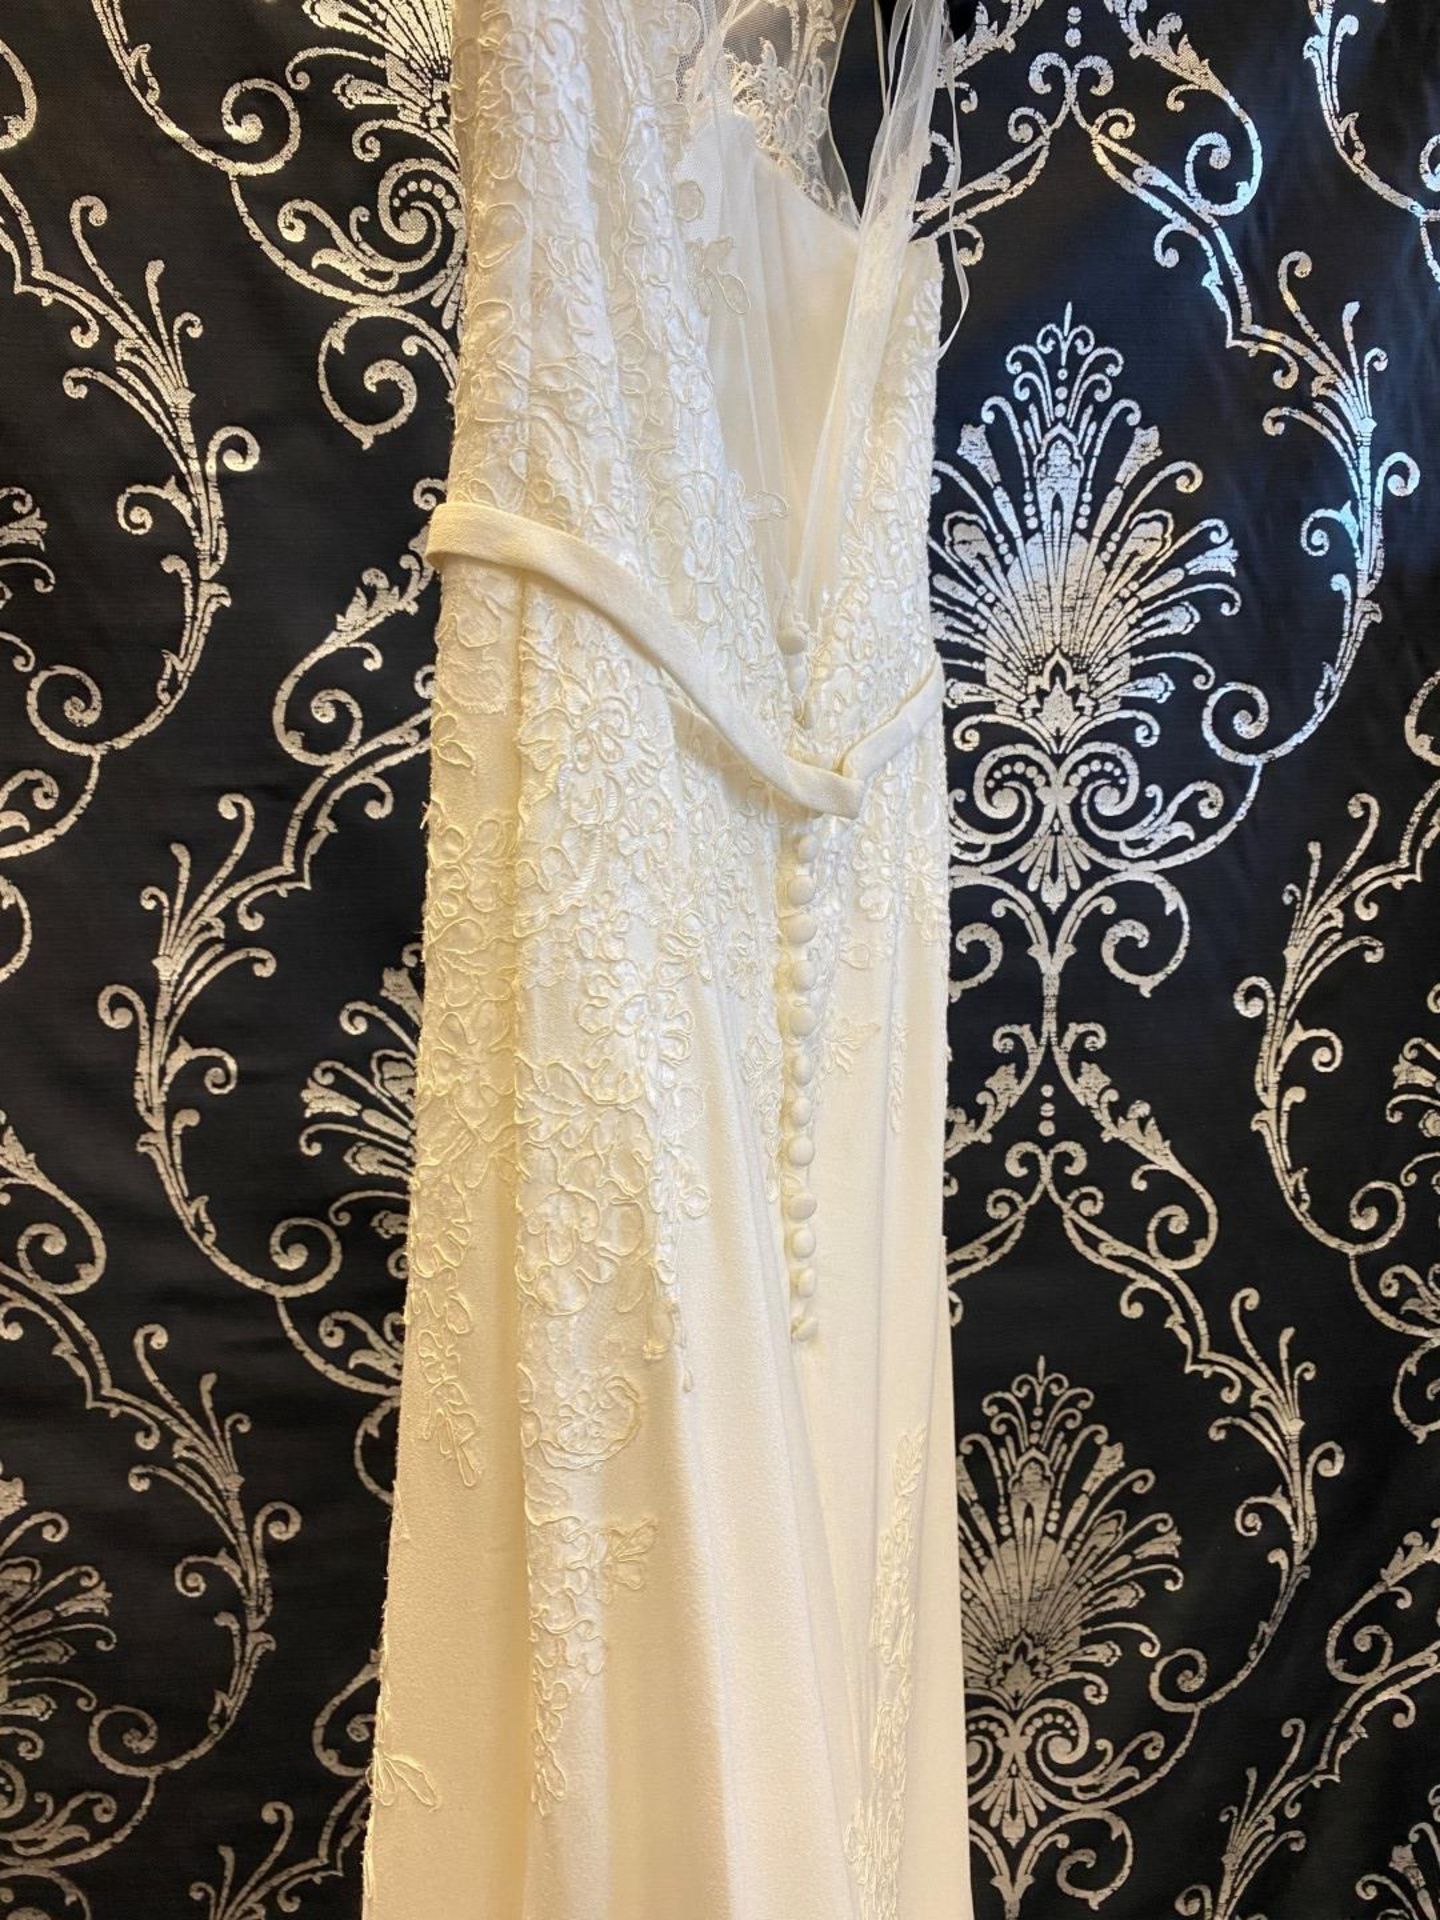 1 x MORI LEE Stunning Chiffon & Lace Biased Cut Designer Wedding Dress Bridal Gown RRP £1,500 UK 12 - Image 3 of 10